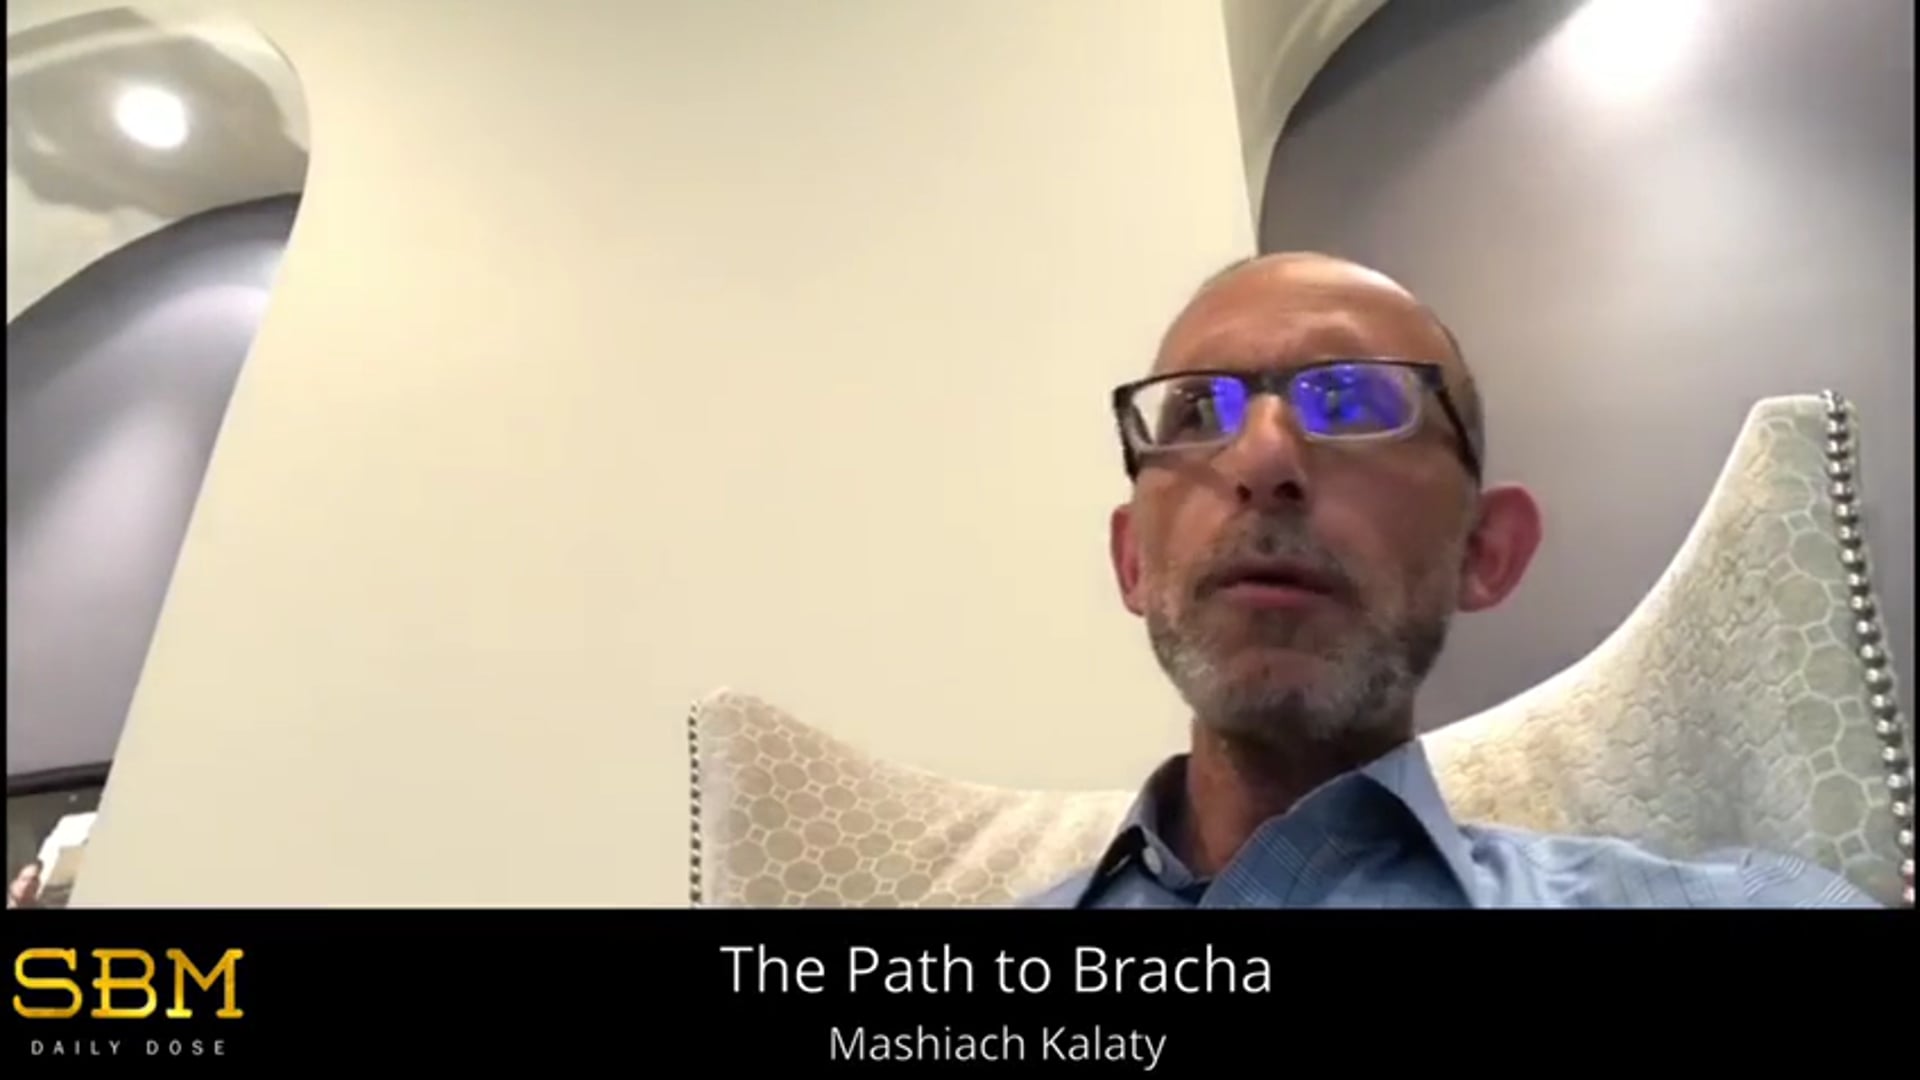 The Path to Bracha - Mashiach Kalaty